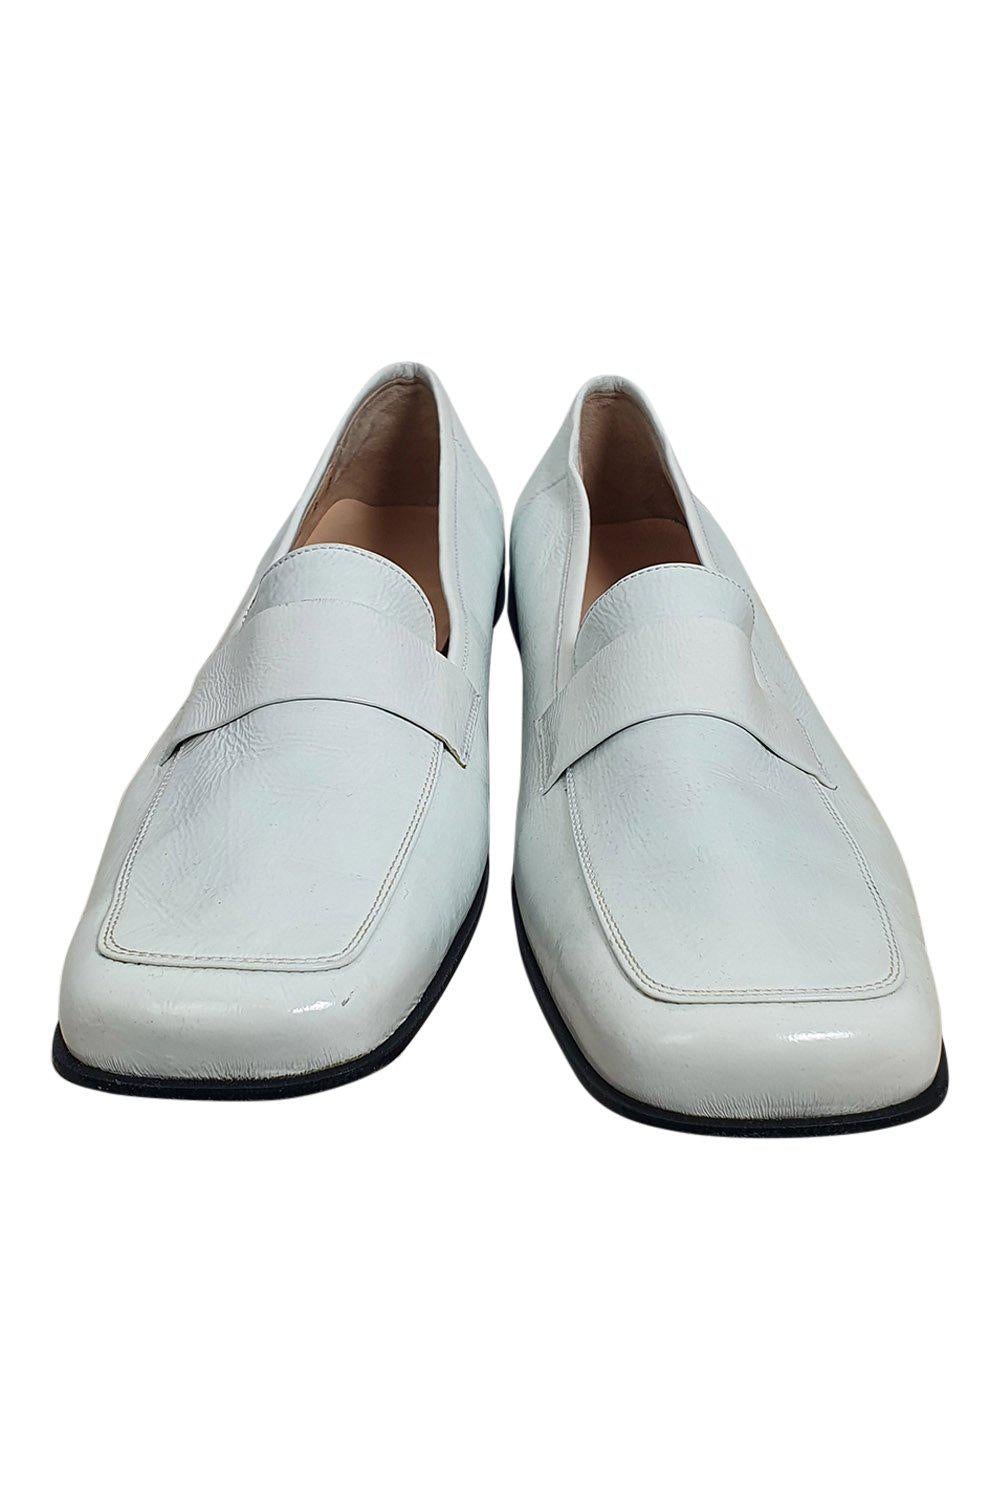 SALVATORE FERRAGAMO White Patent Leather Square Toe Court Shoes (9 B)-The Freperie